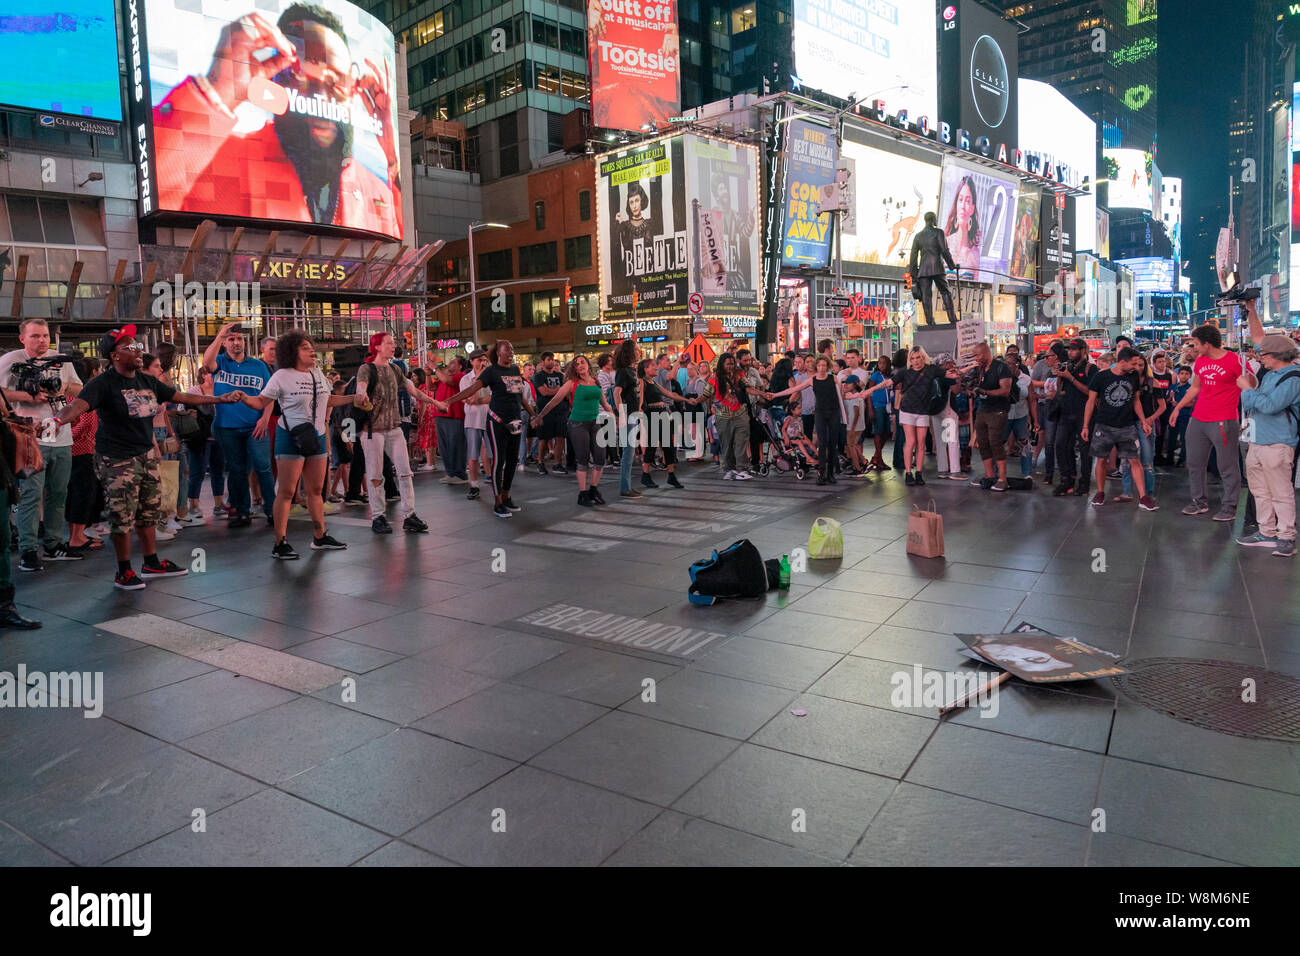 New York, NY - August 9, 2019: Mitglieder von NYC Herunterfahren Gruppe Protest in Unterstützung von Mike Brown und Eric Garner und schwarze Leben Materie am Times Square inszeniert Stockfoto